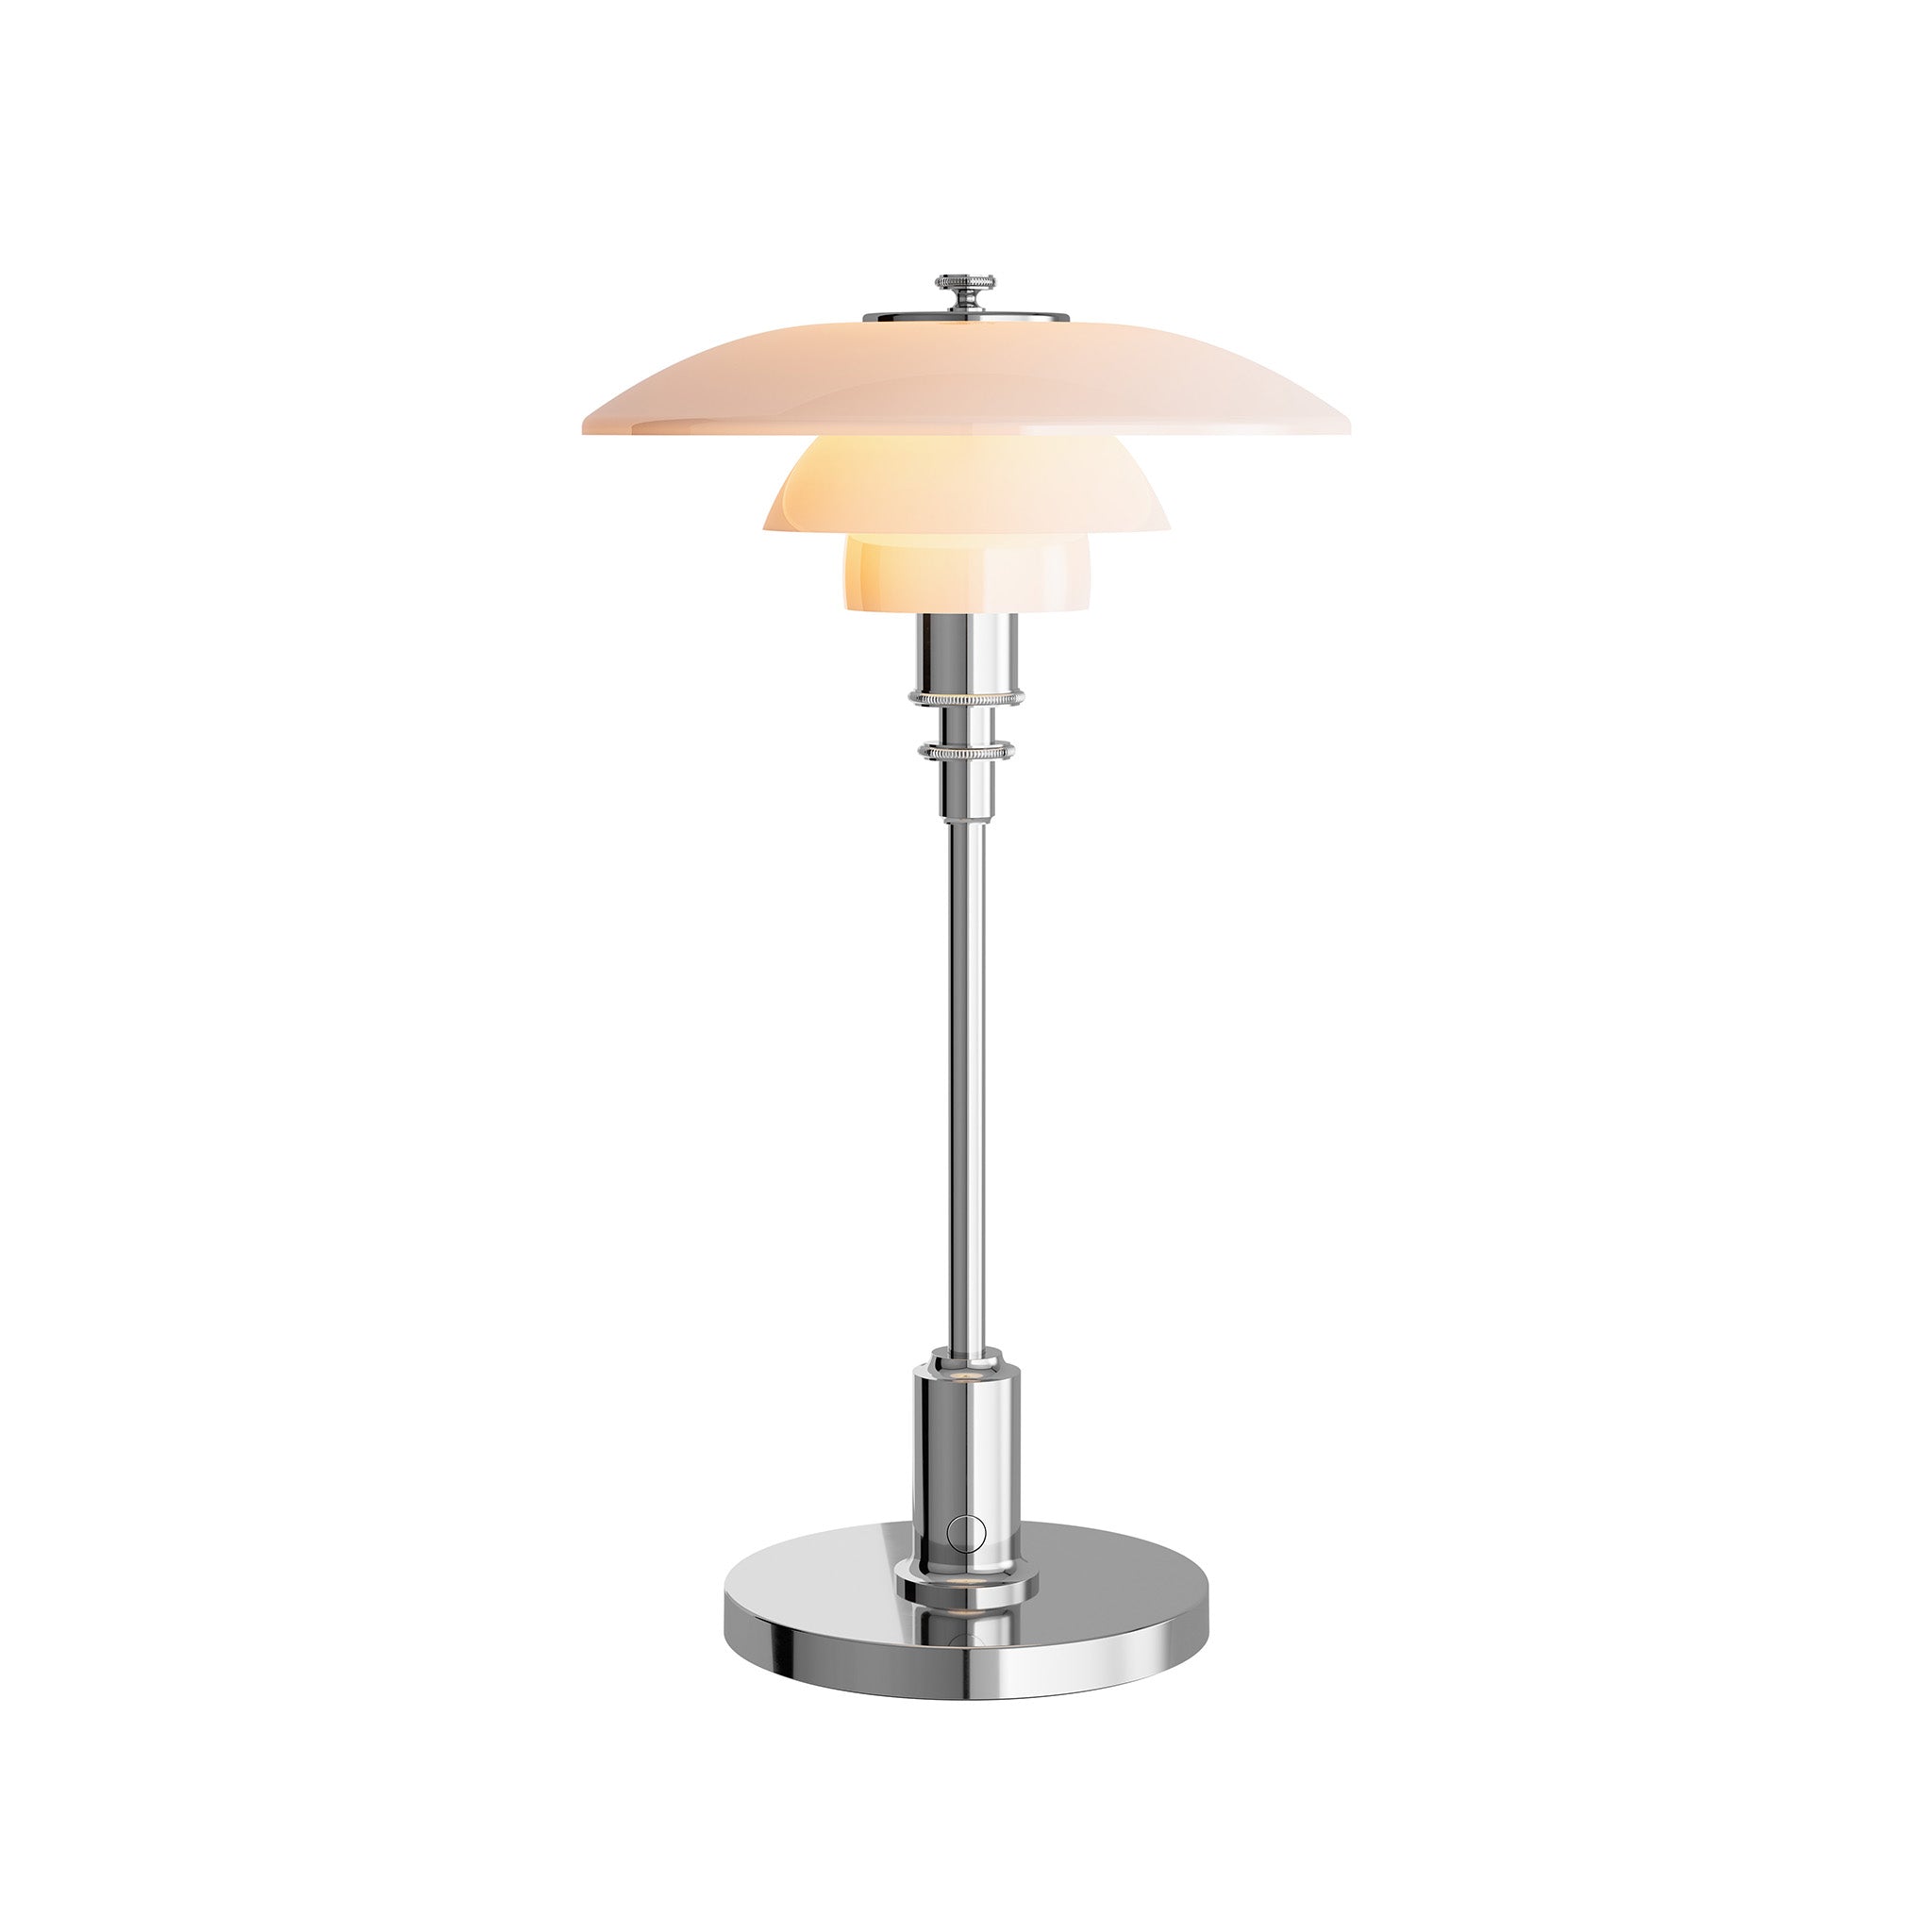 PH 2/1 Portable Table Lamp by Louis Poulsen